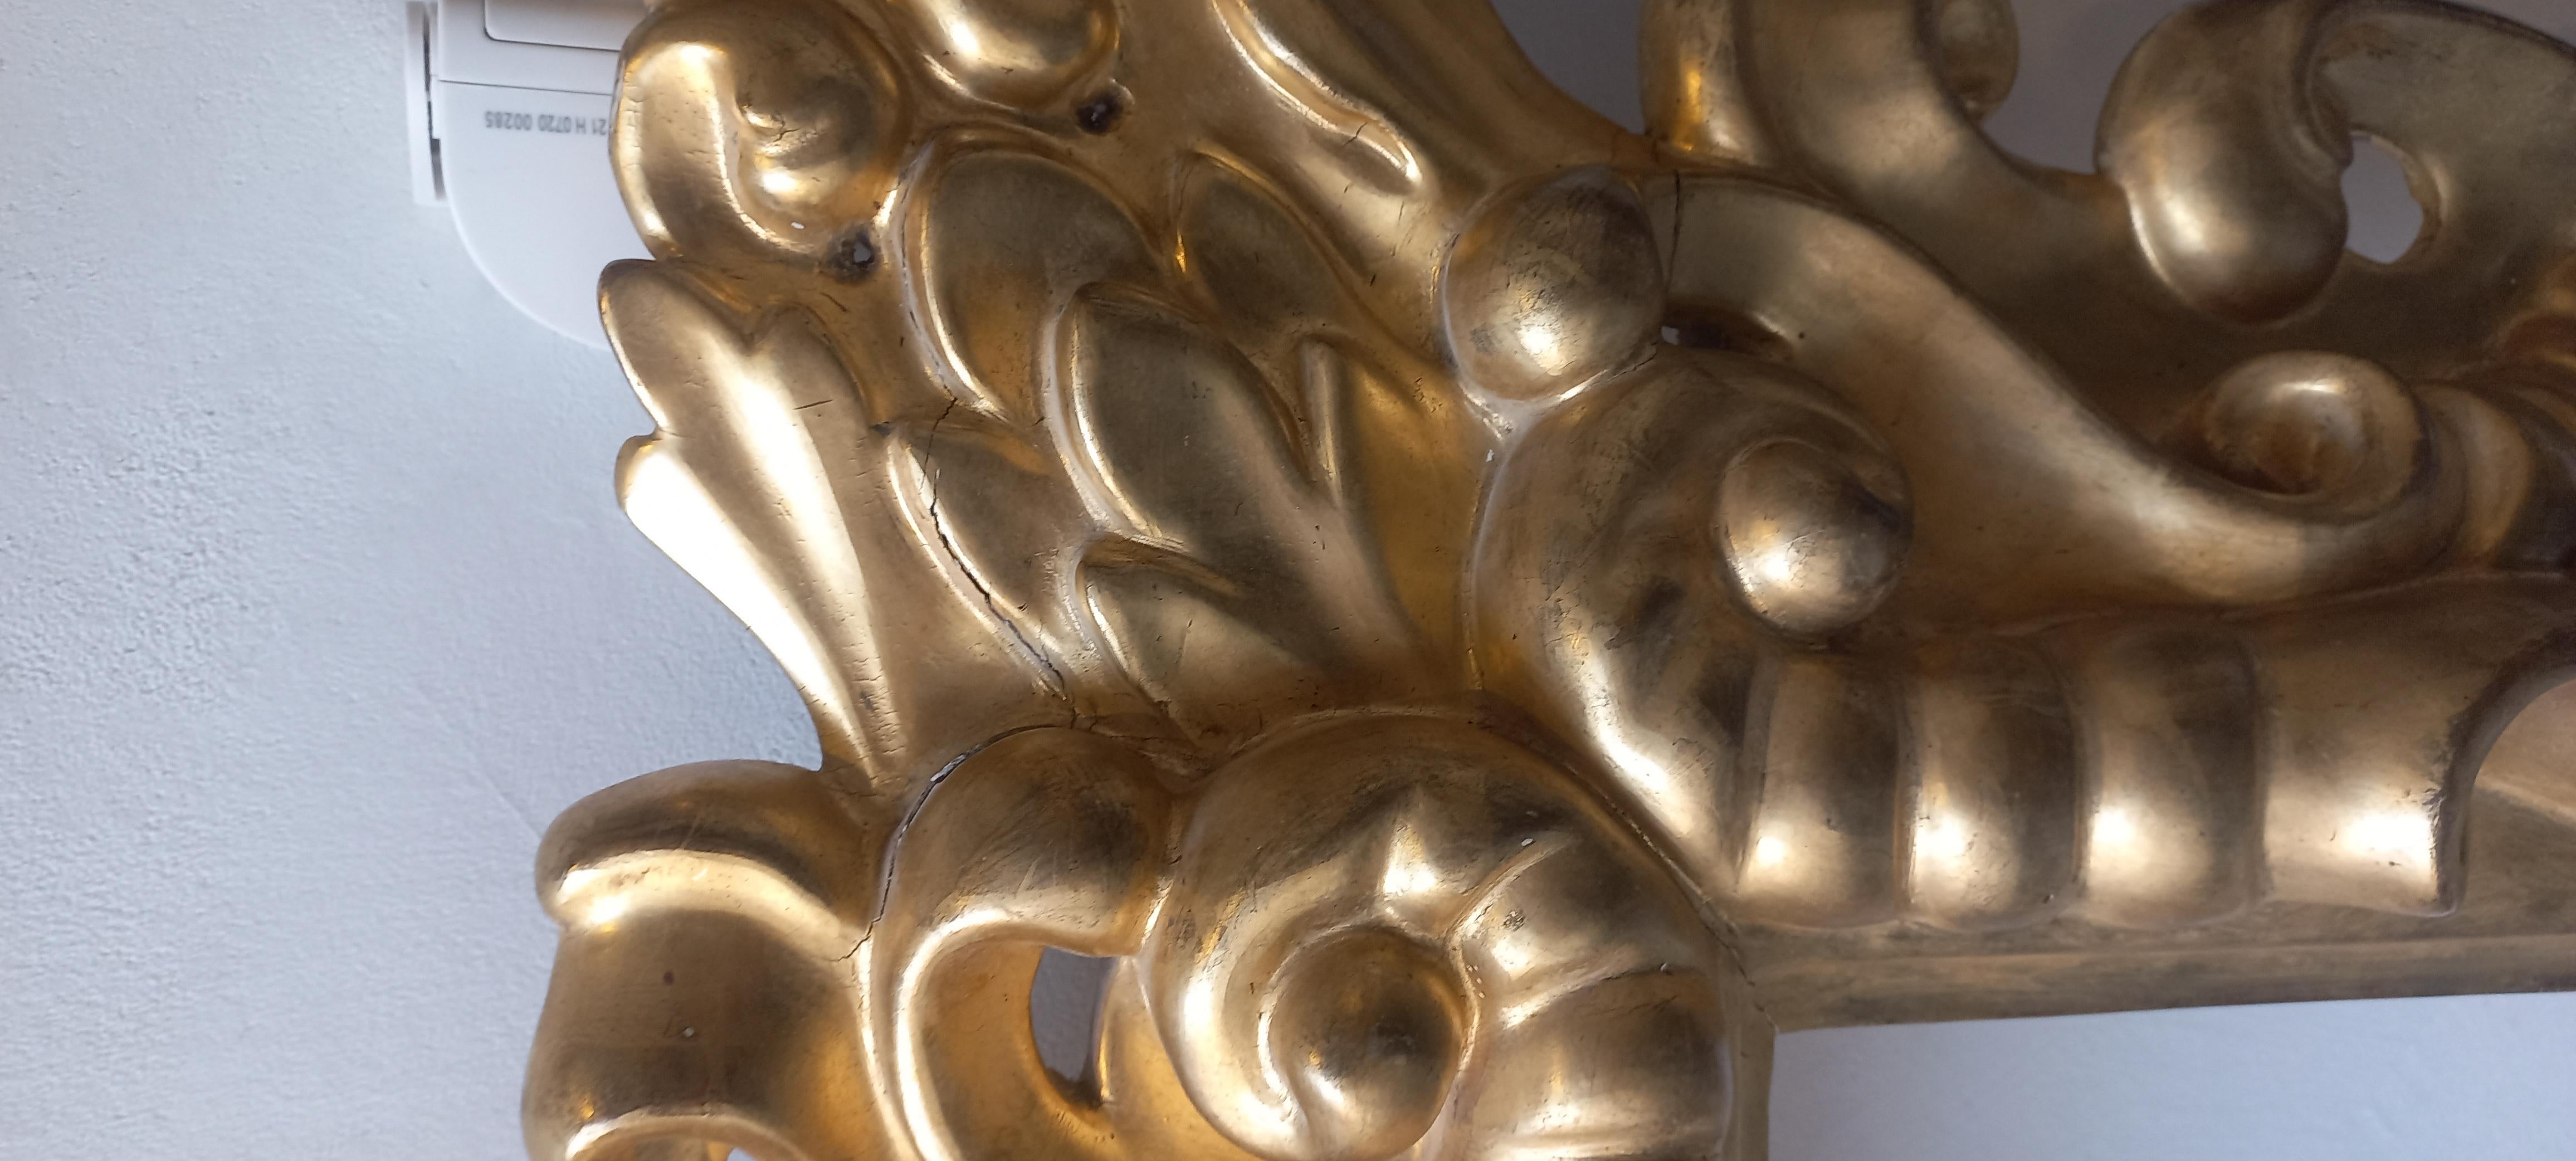 Cornice intagliata in legno dorato a foglia d'oro, XIX secolo su modello seicentesco, misure 102x75 cm, misure intern 43x69 cm, luce 39.5x65.2 cm. La stecca ha uno spessore di 20 cm.
Das Gesims dient zur Dekoration einer alten oder modernen Wohnung,